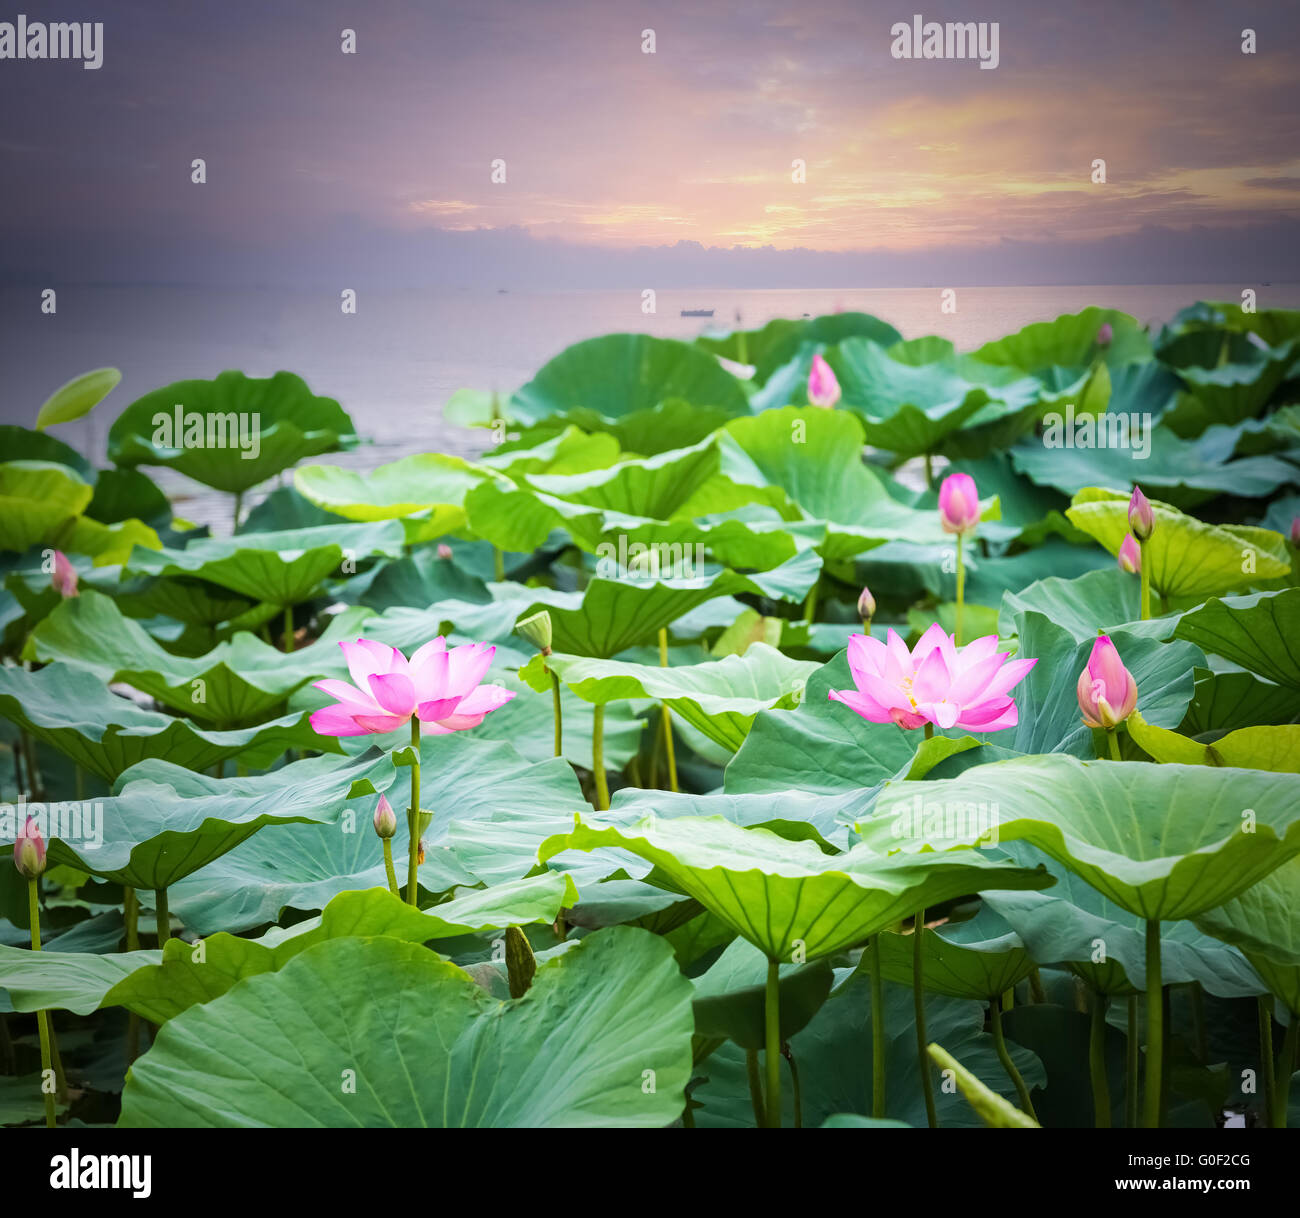 Fiore di loto in fiore nel tramonto Foto Stock